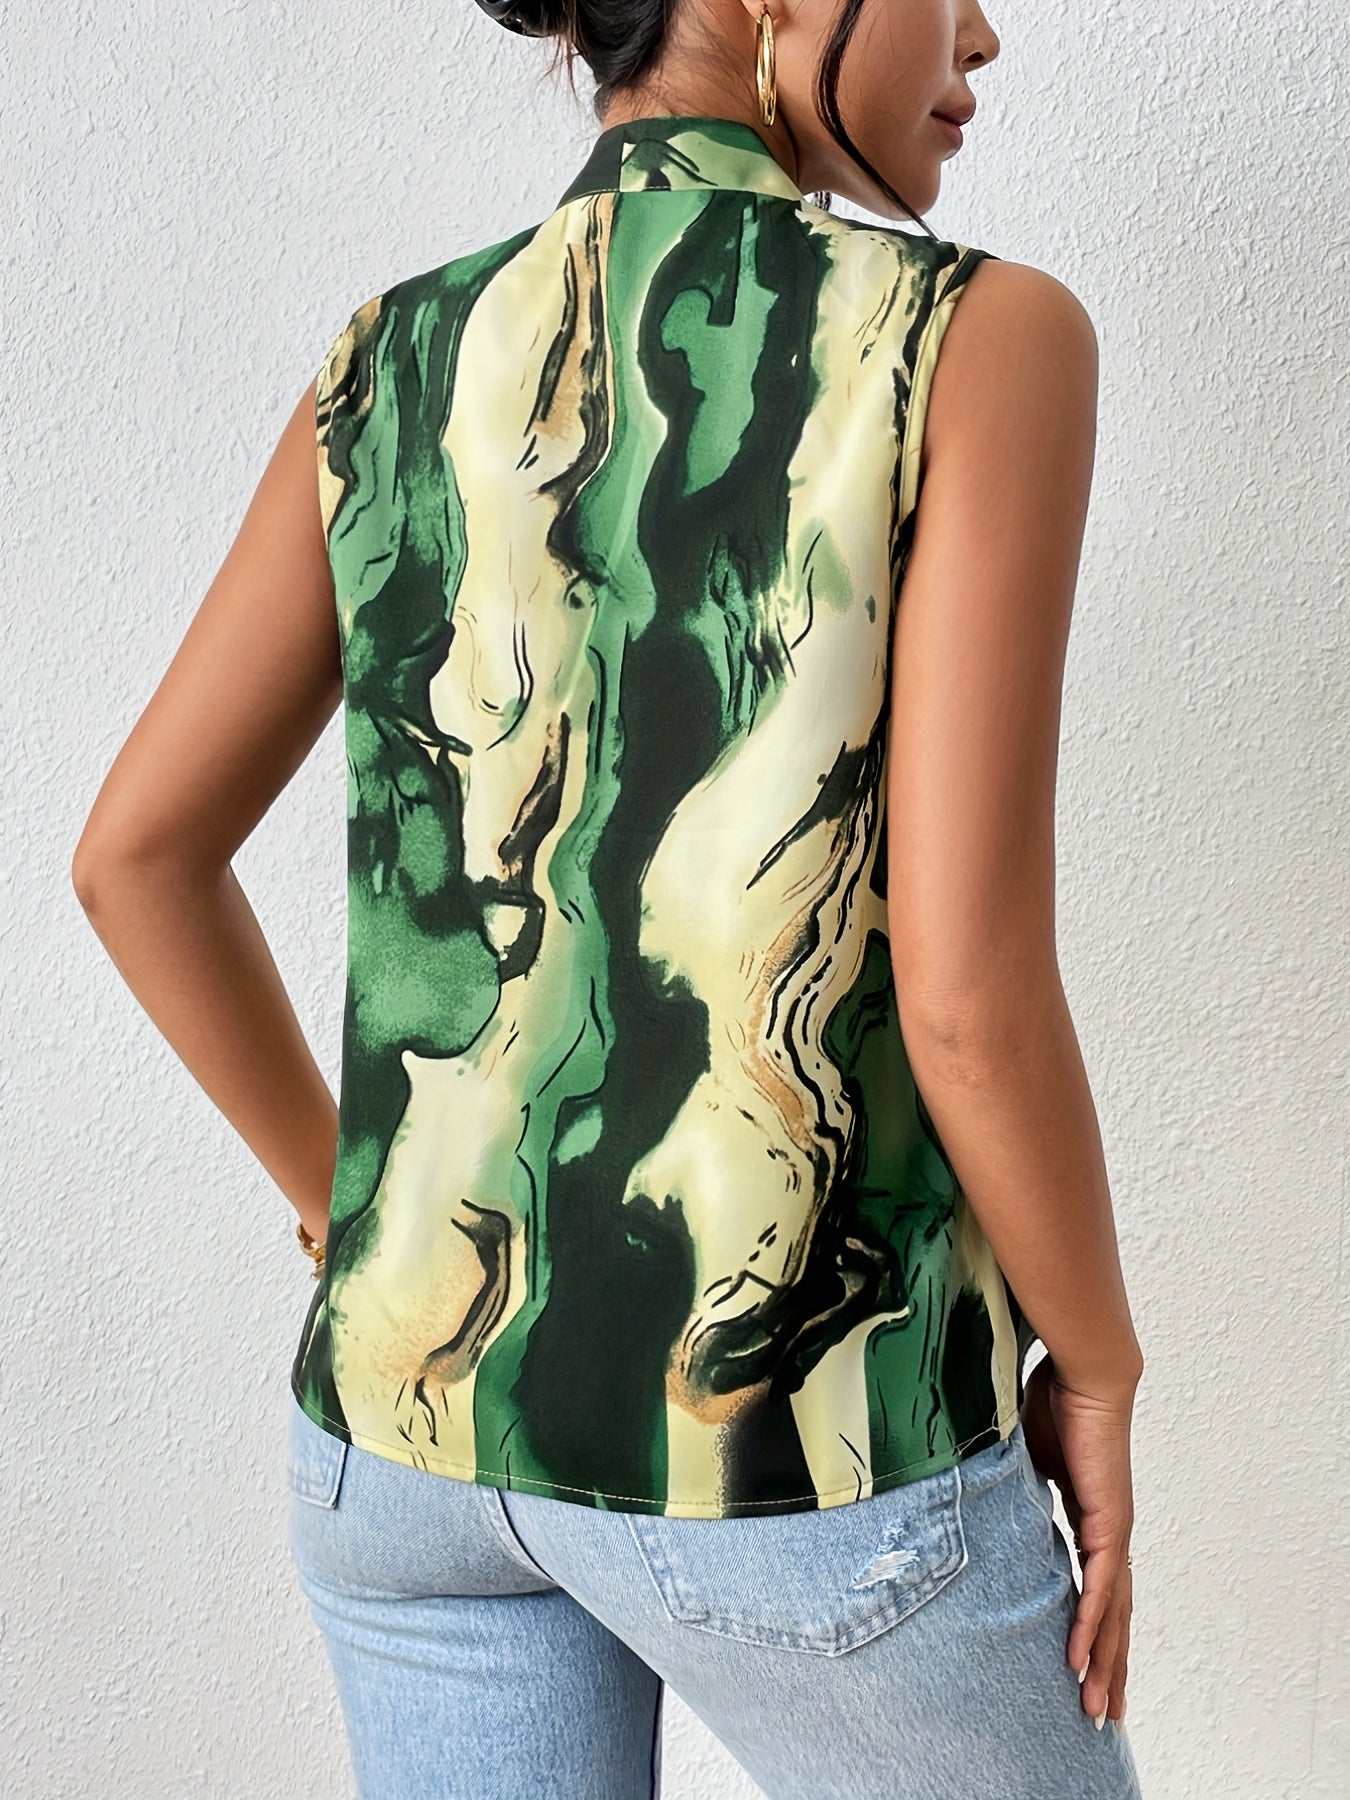 vlovelaw  Marble Print Sleeveless Blouse, Elegant V-neck Tank Blouse For Summer, Women's Clothing